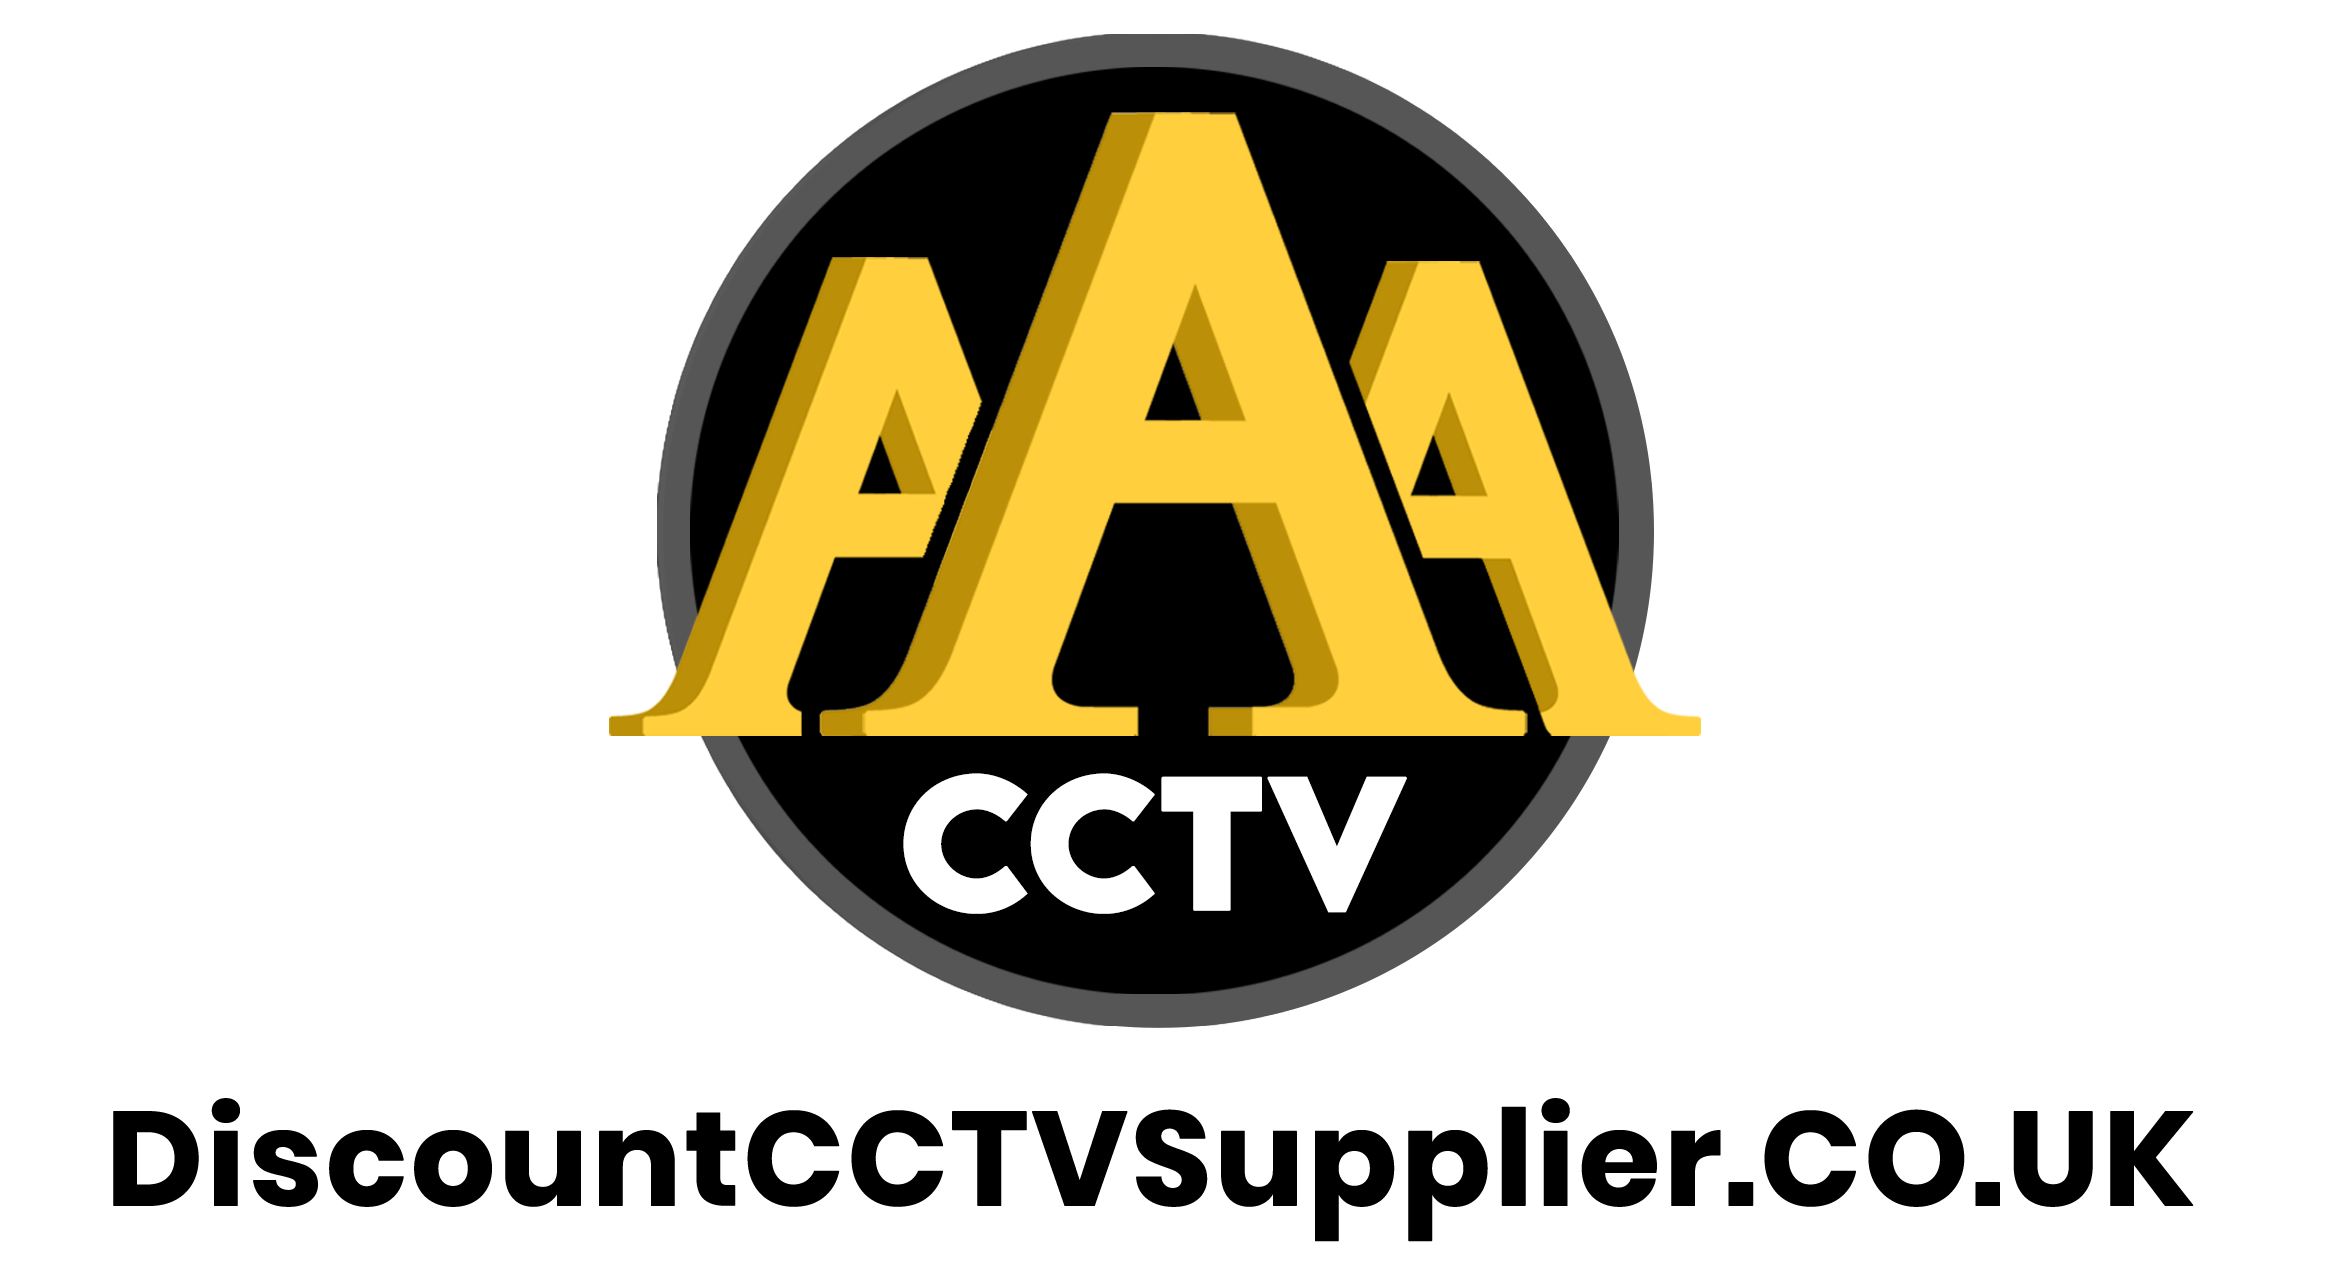 AAA CCTV